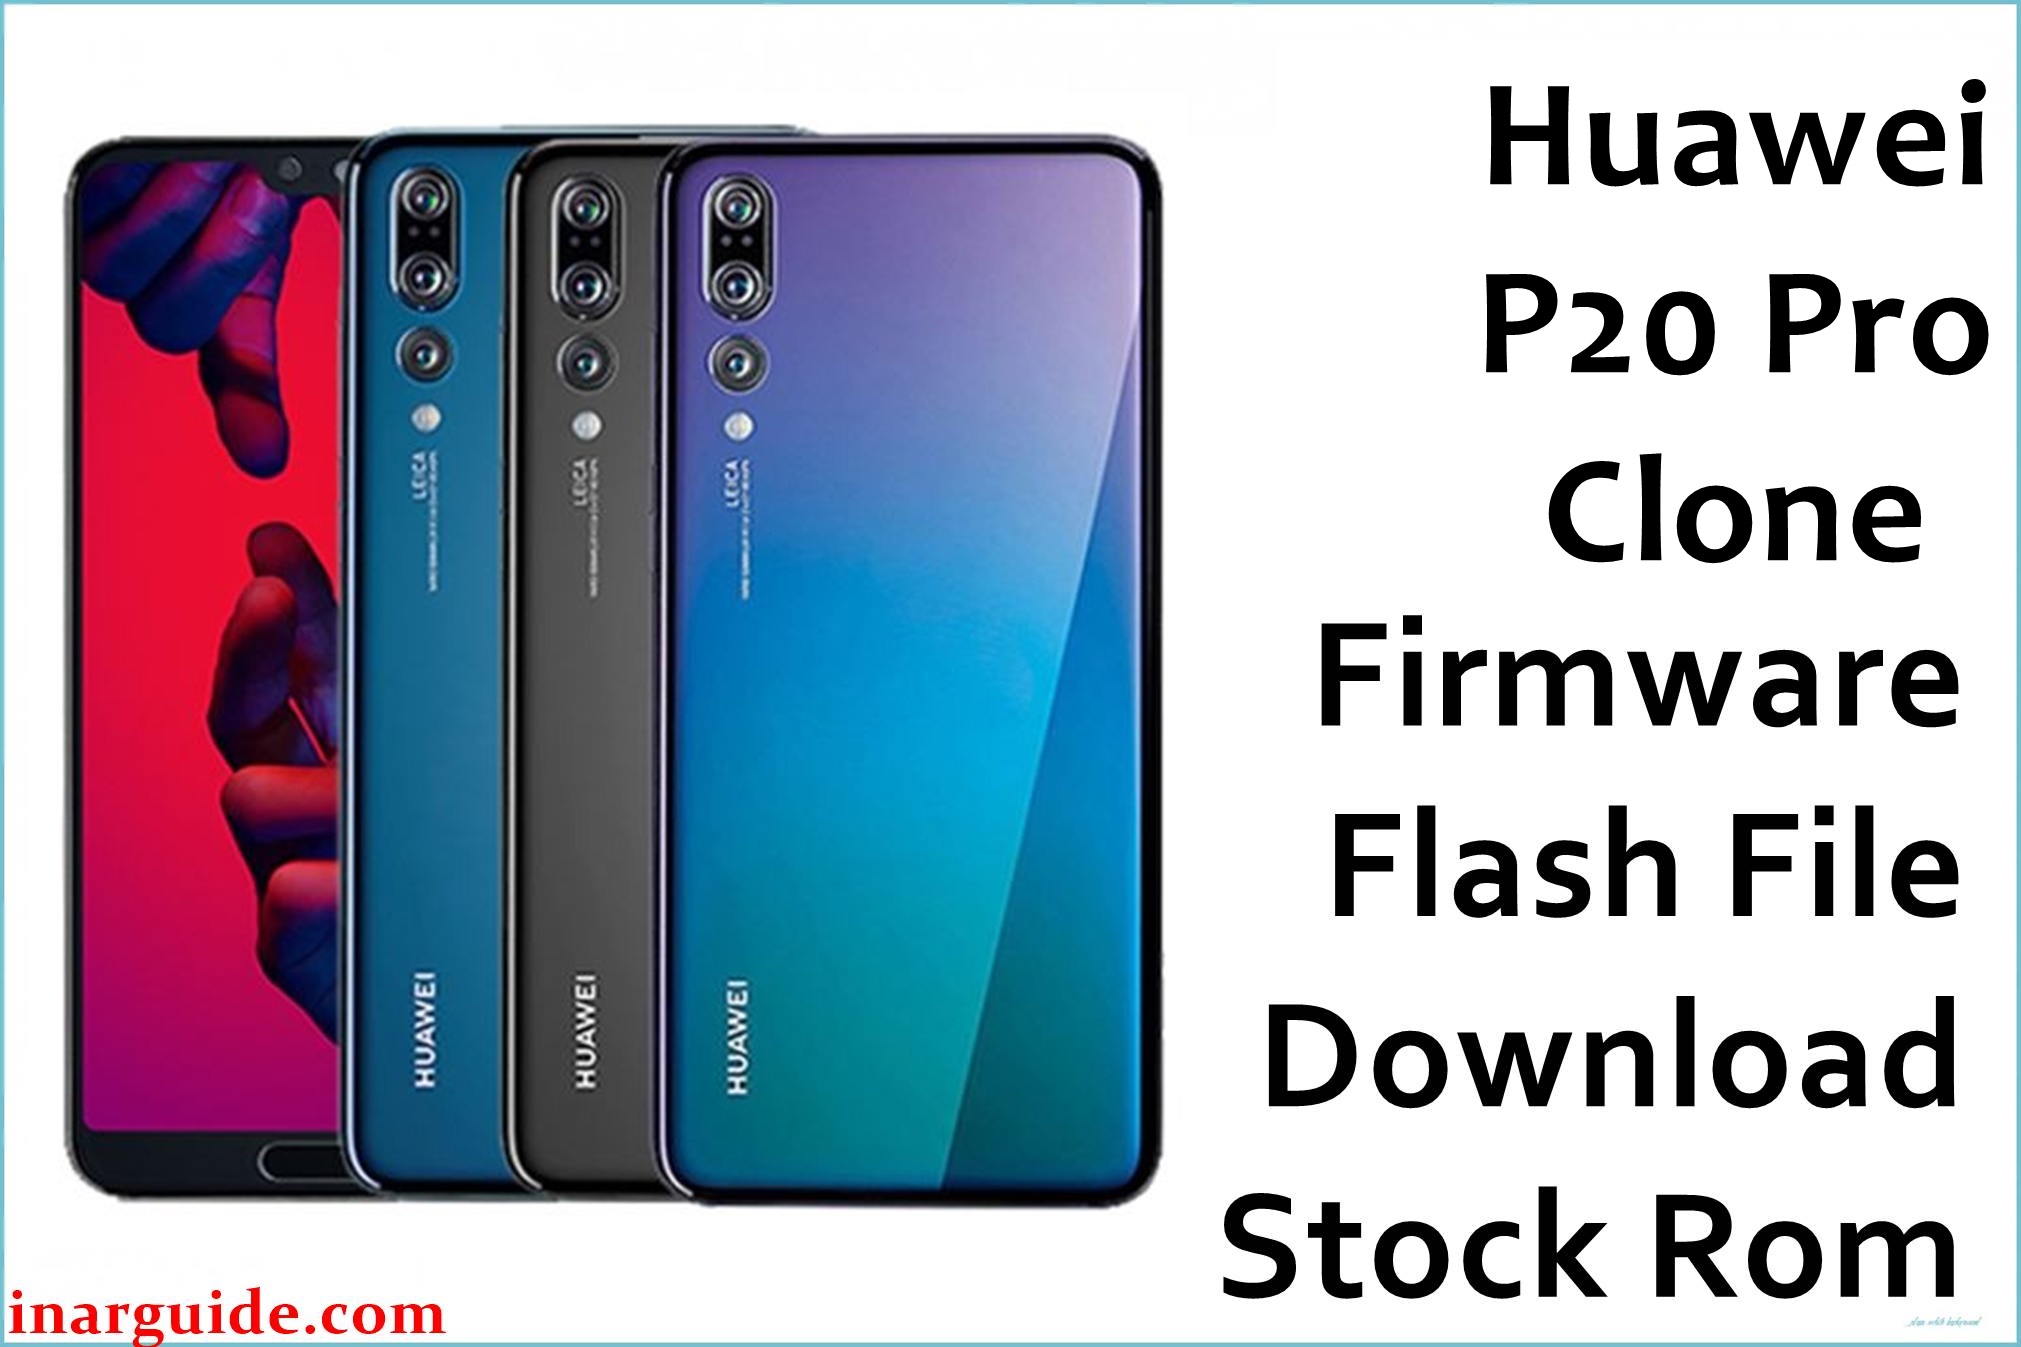 Huawei P20 Pro Clone